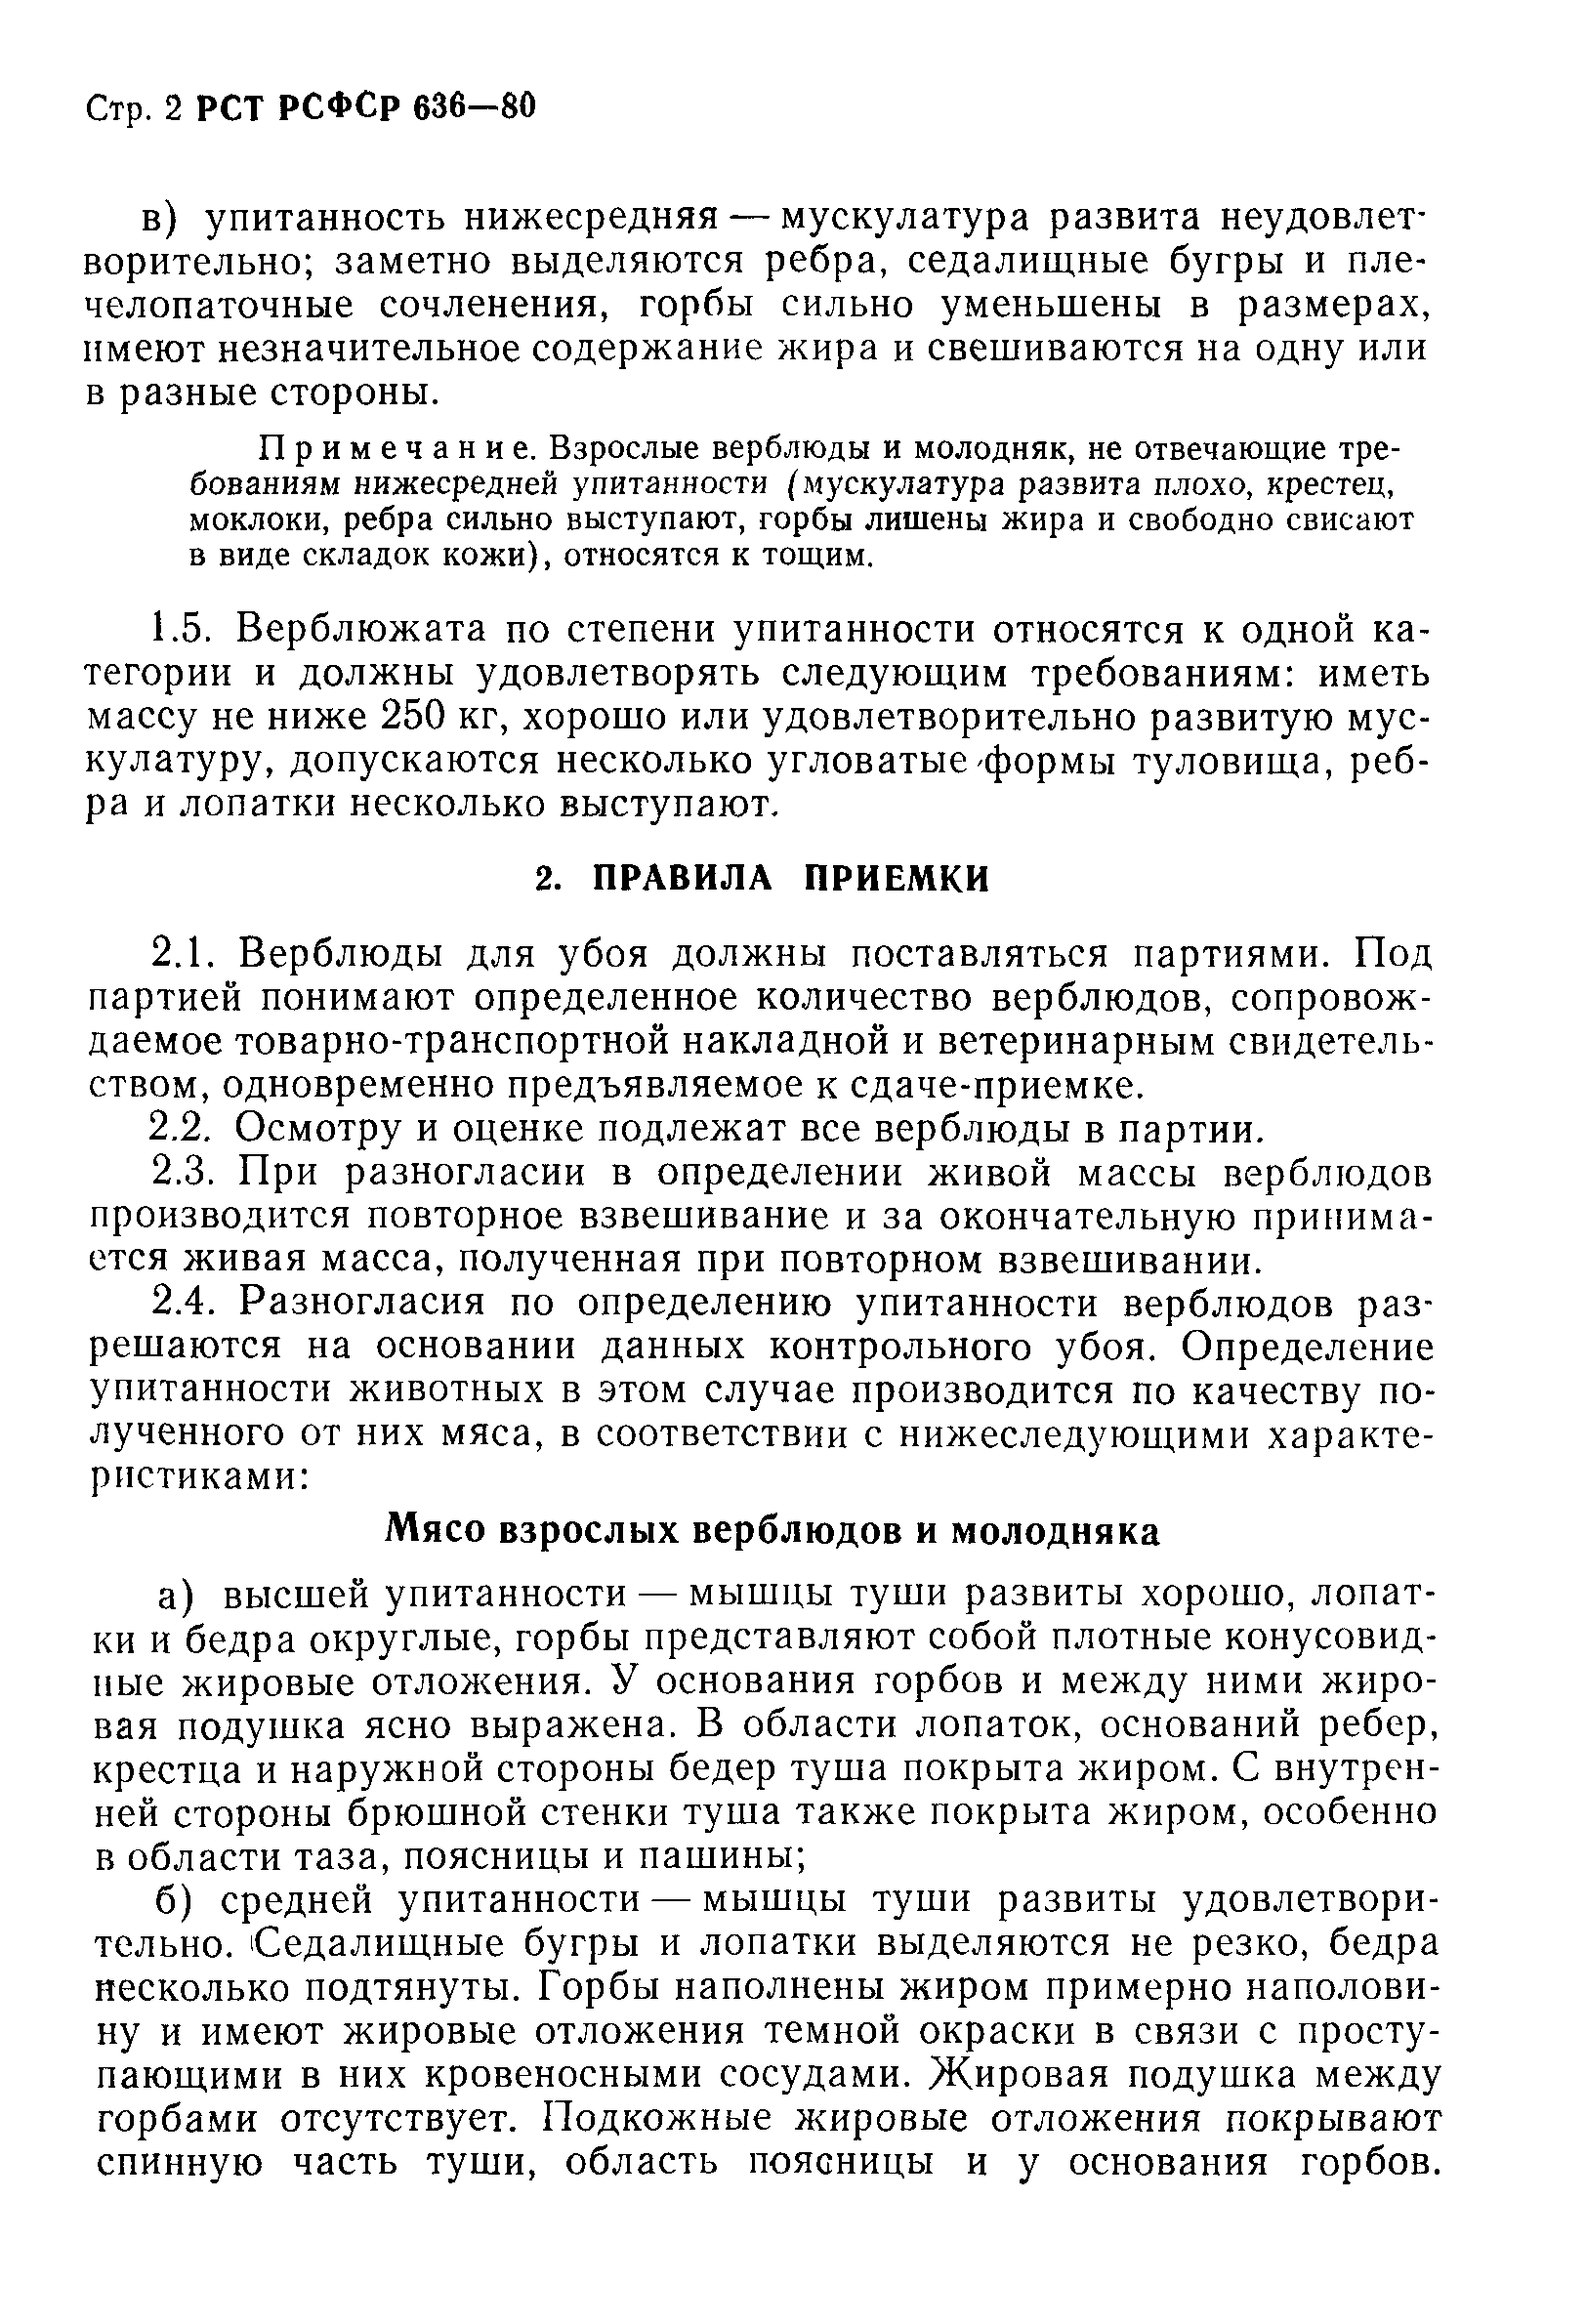 РСТ РСФСР 636-80